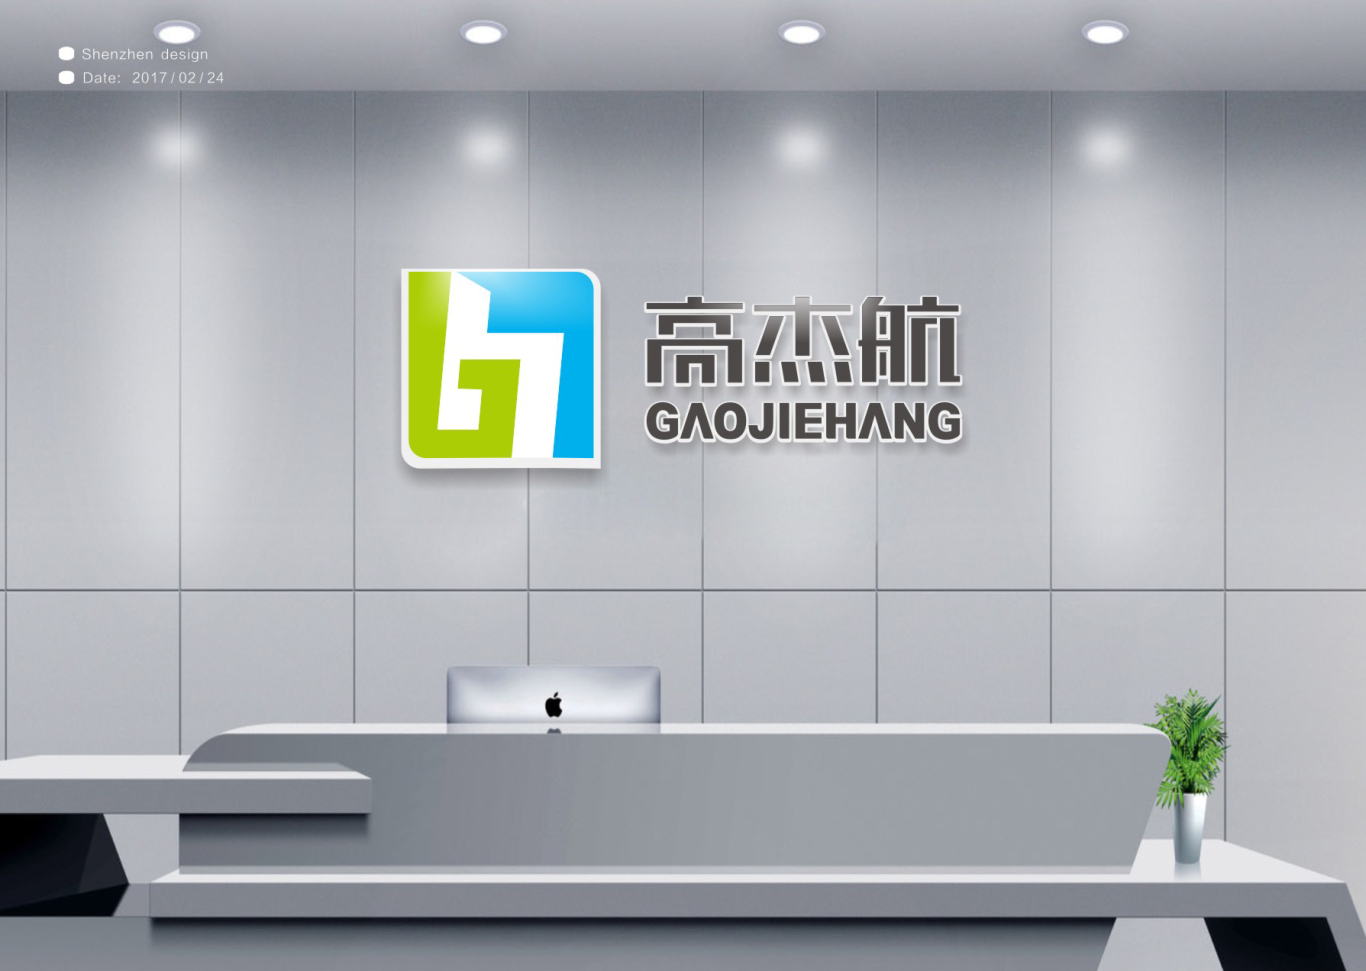 高杰航電子科技公司logo設計圖4